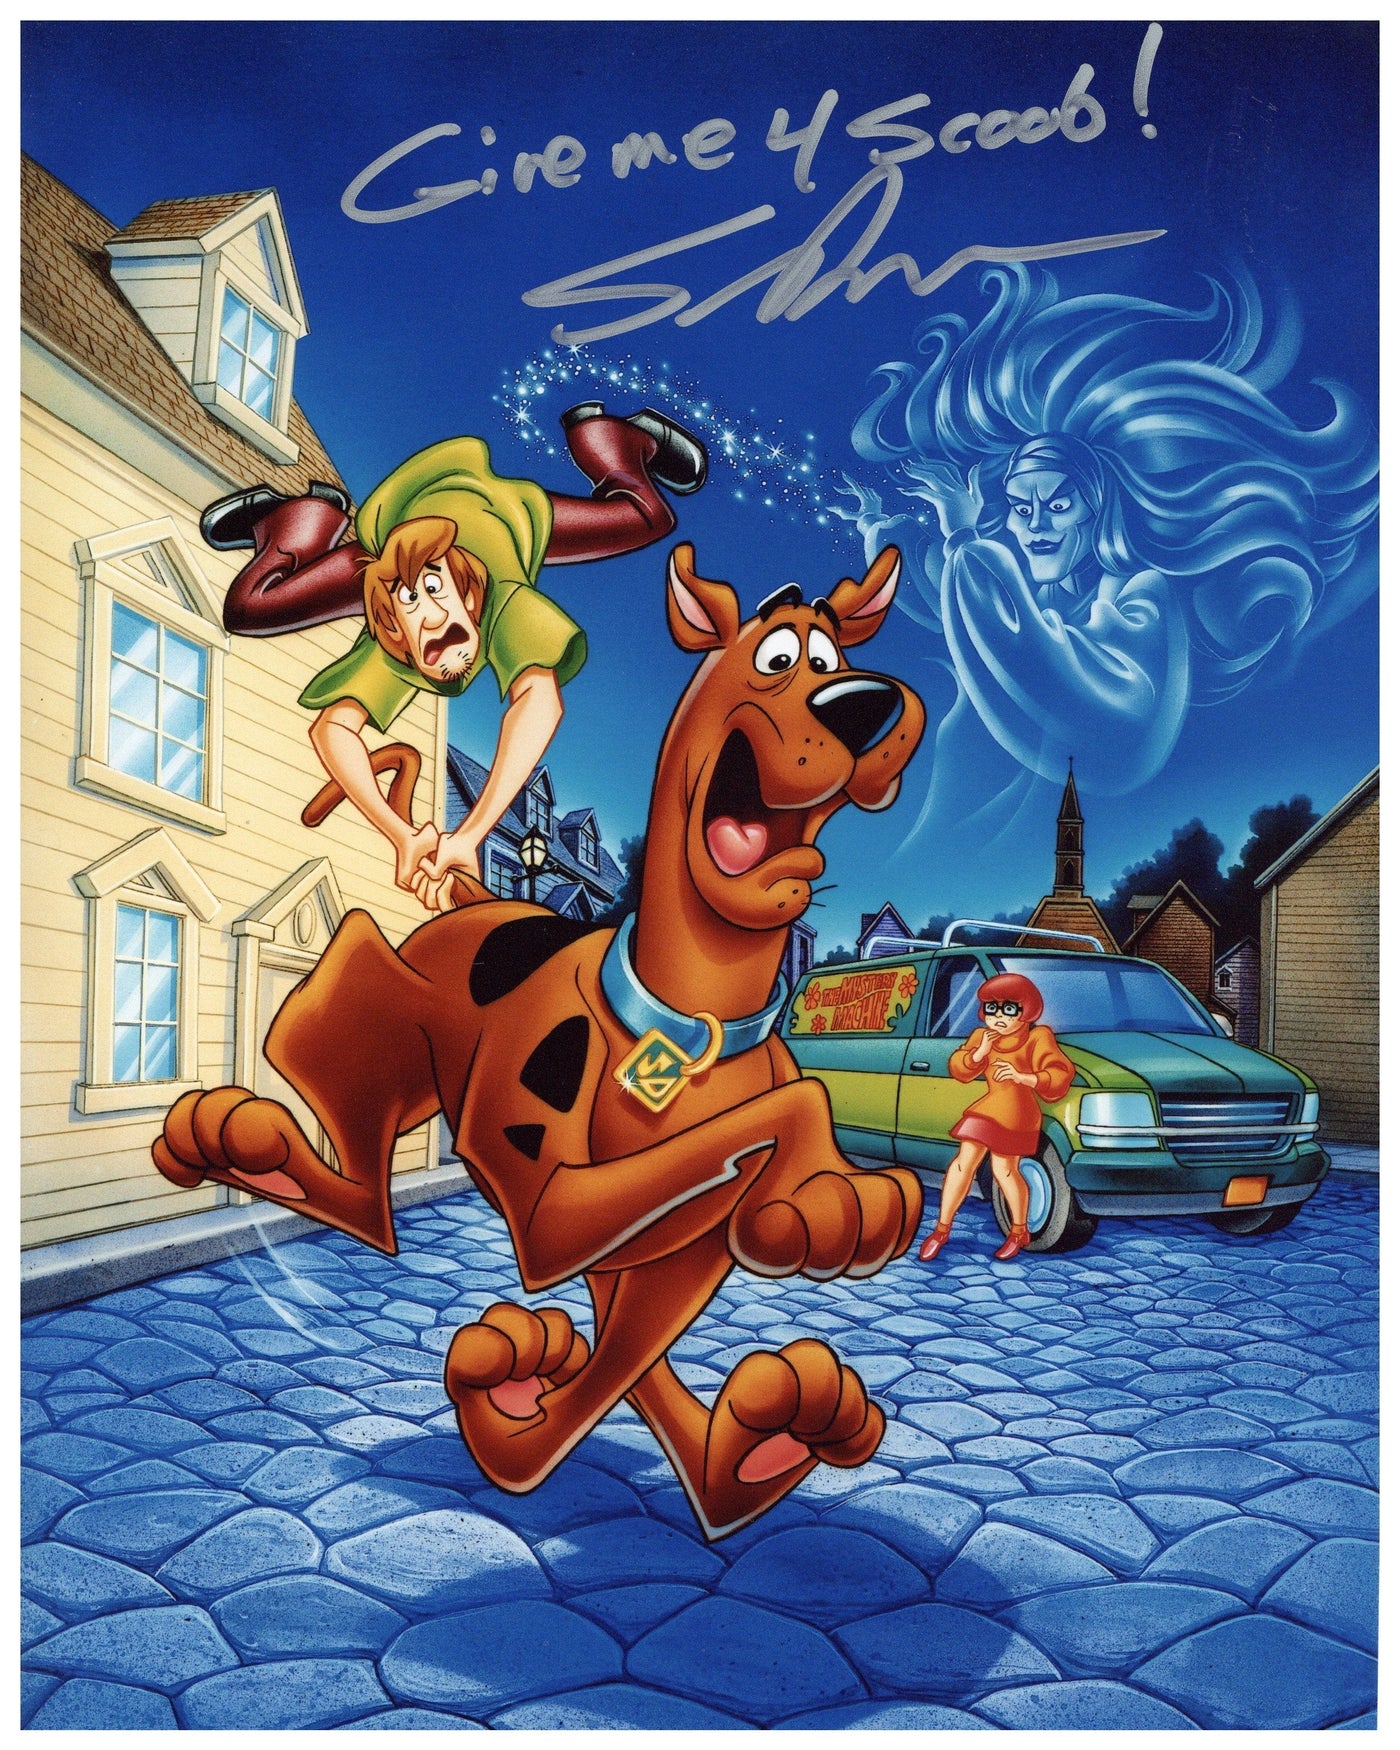 Scott Innes Signed 8x10 Photo Scooby Doo Autographed Zobie COA #3